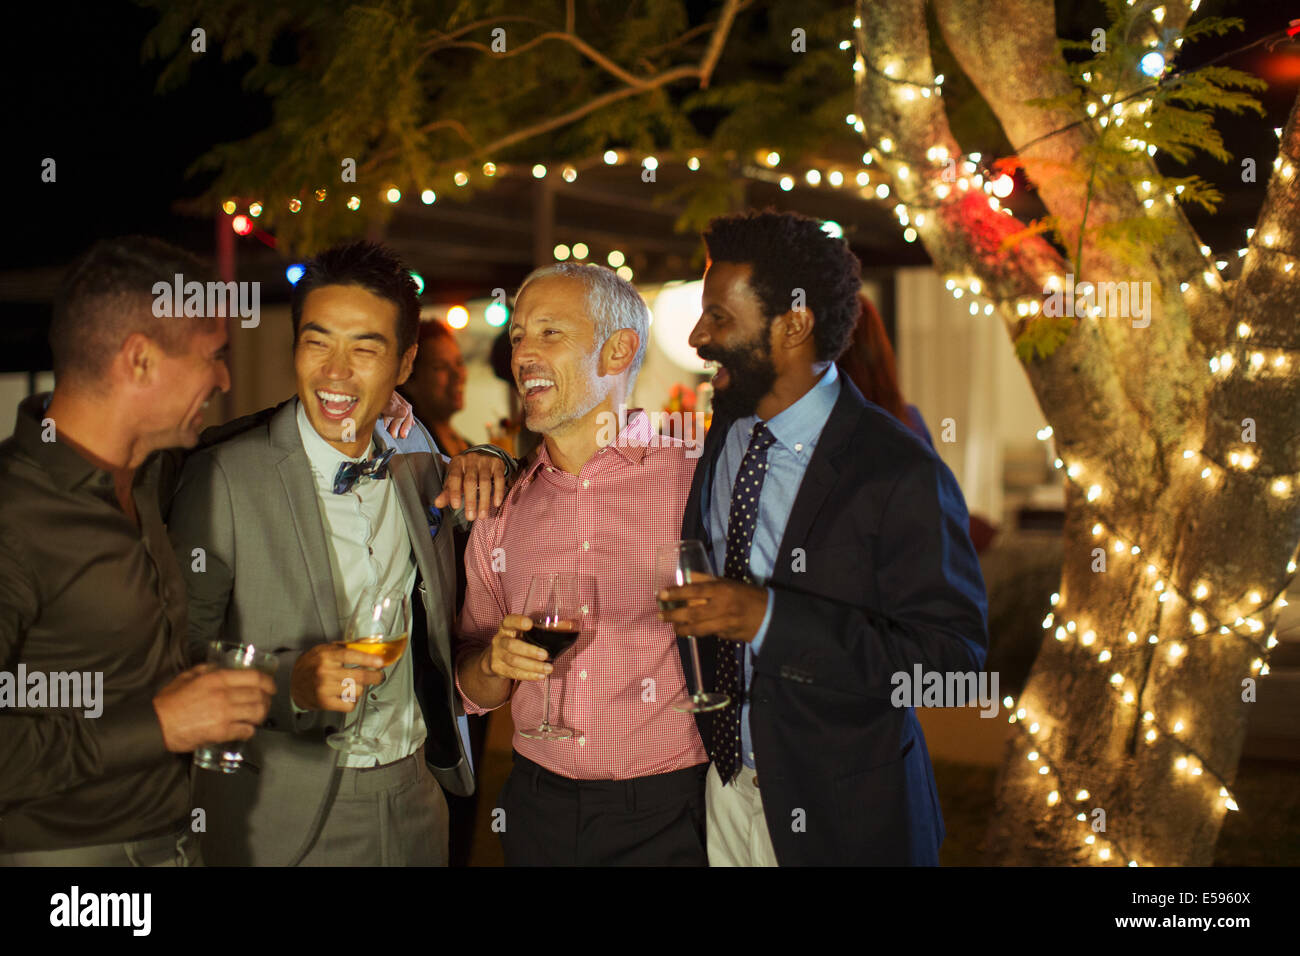 Men talking at party Stock Photo